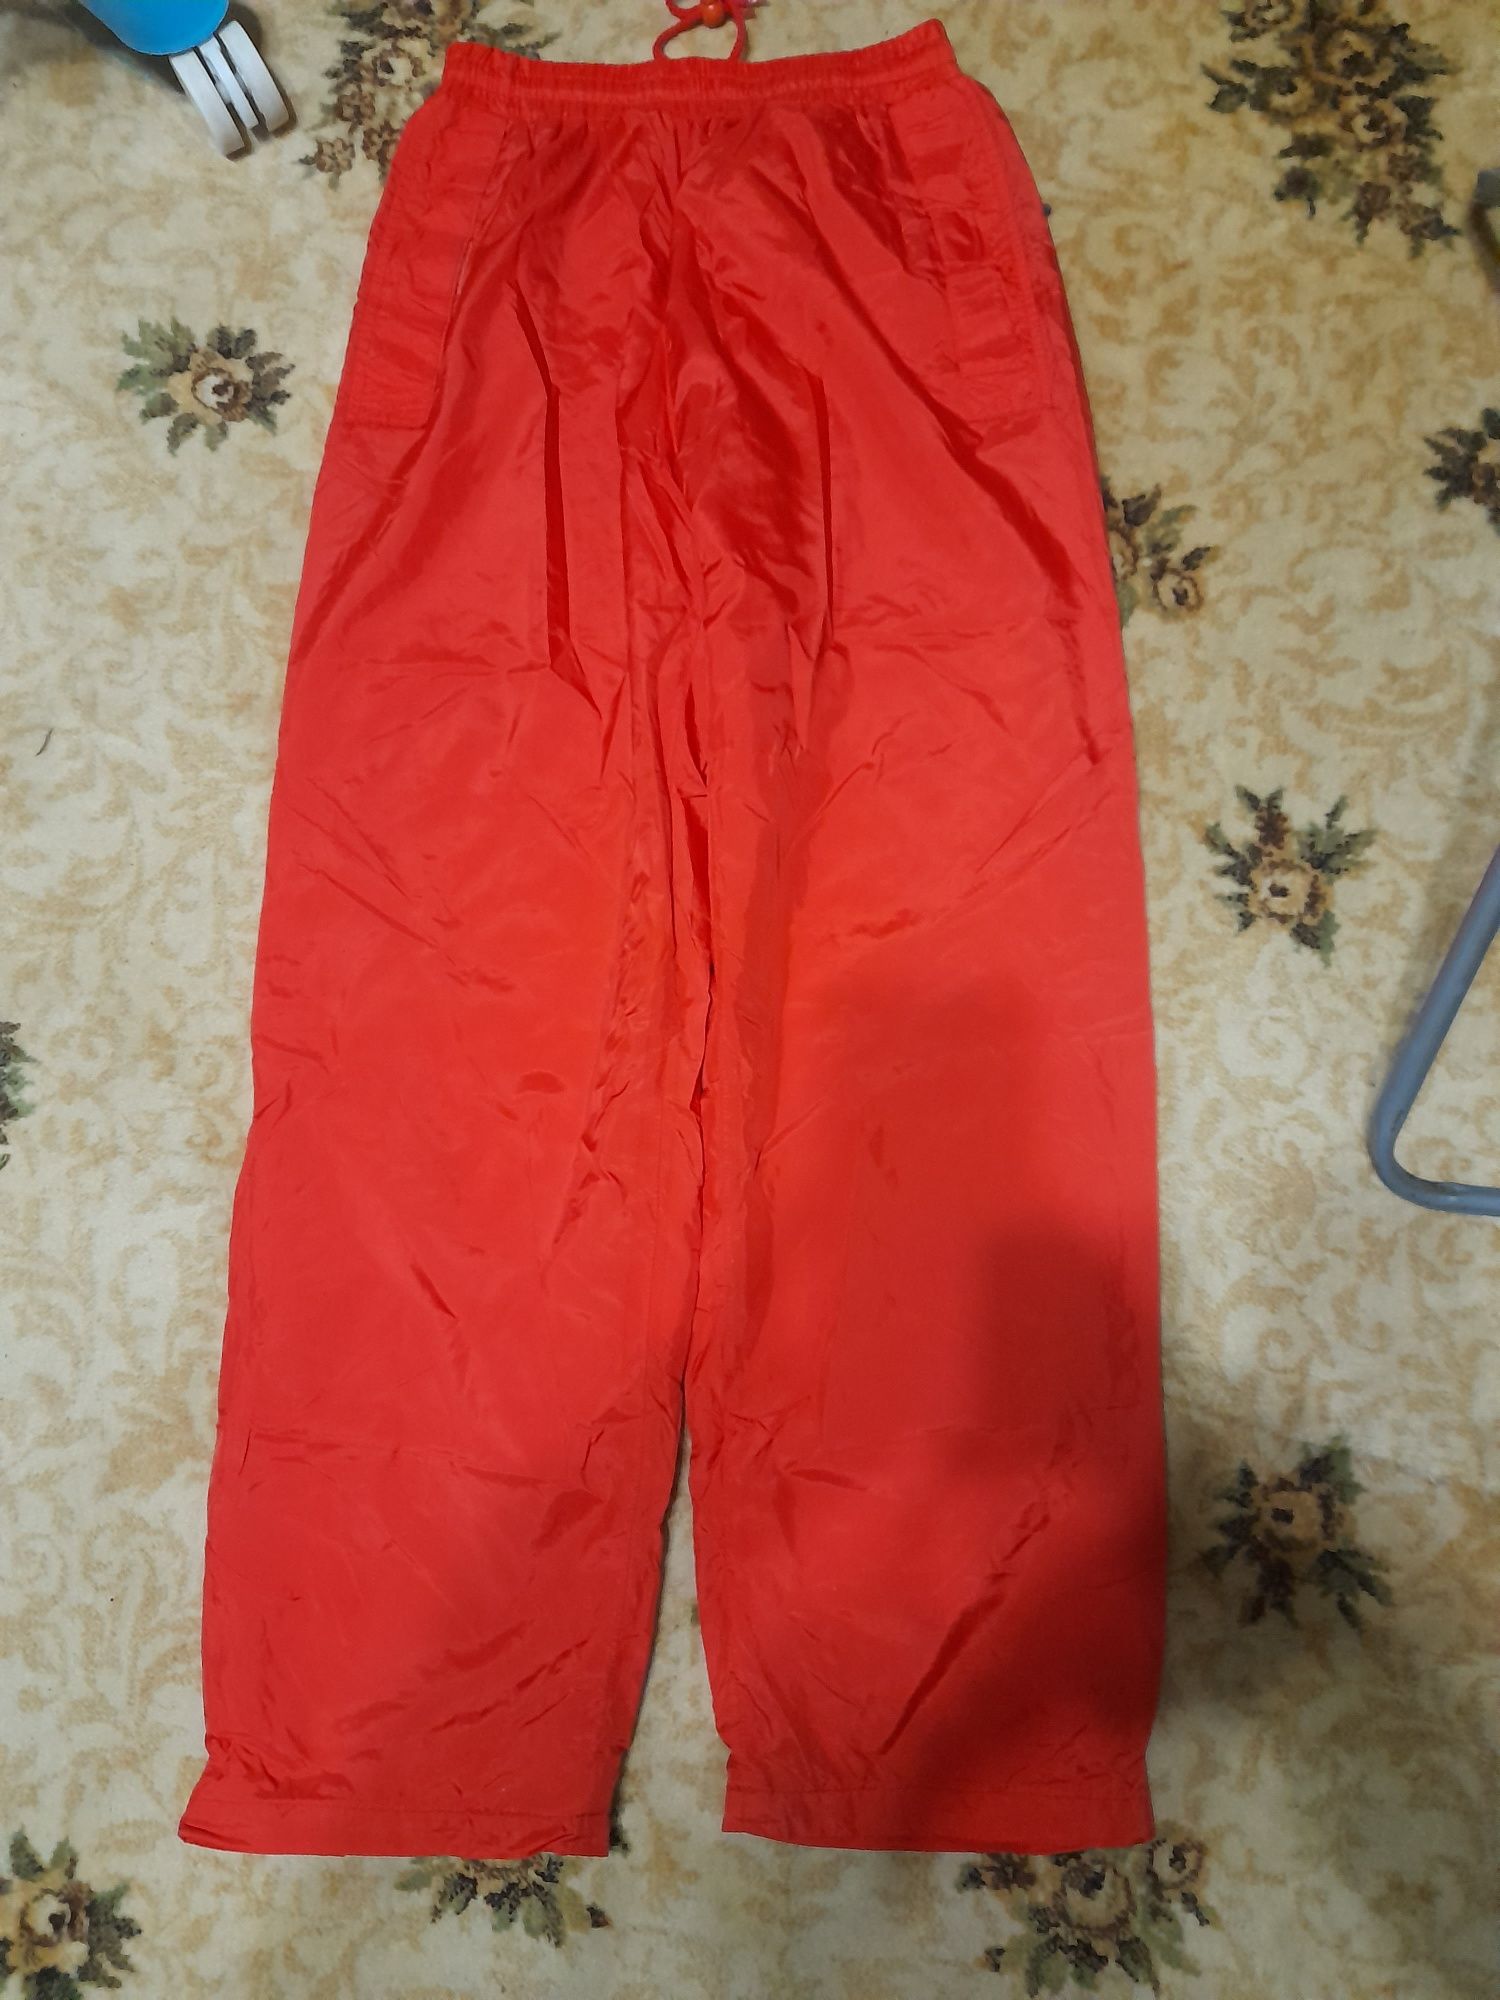 Спортивные брюки из болонья красного цвета размер 50